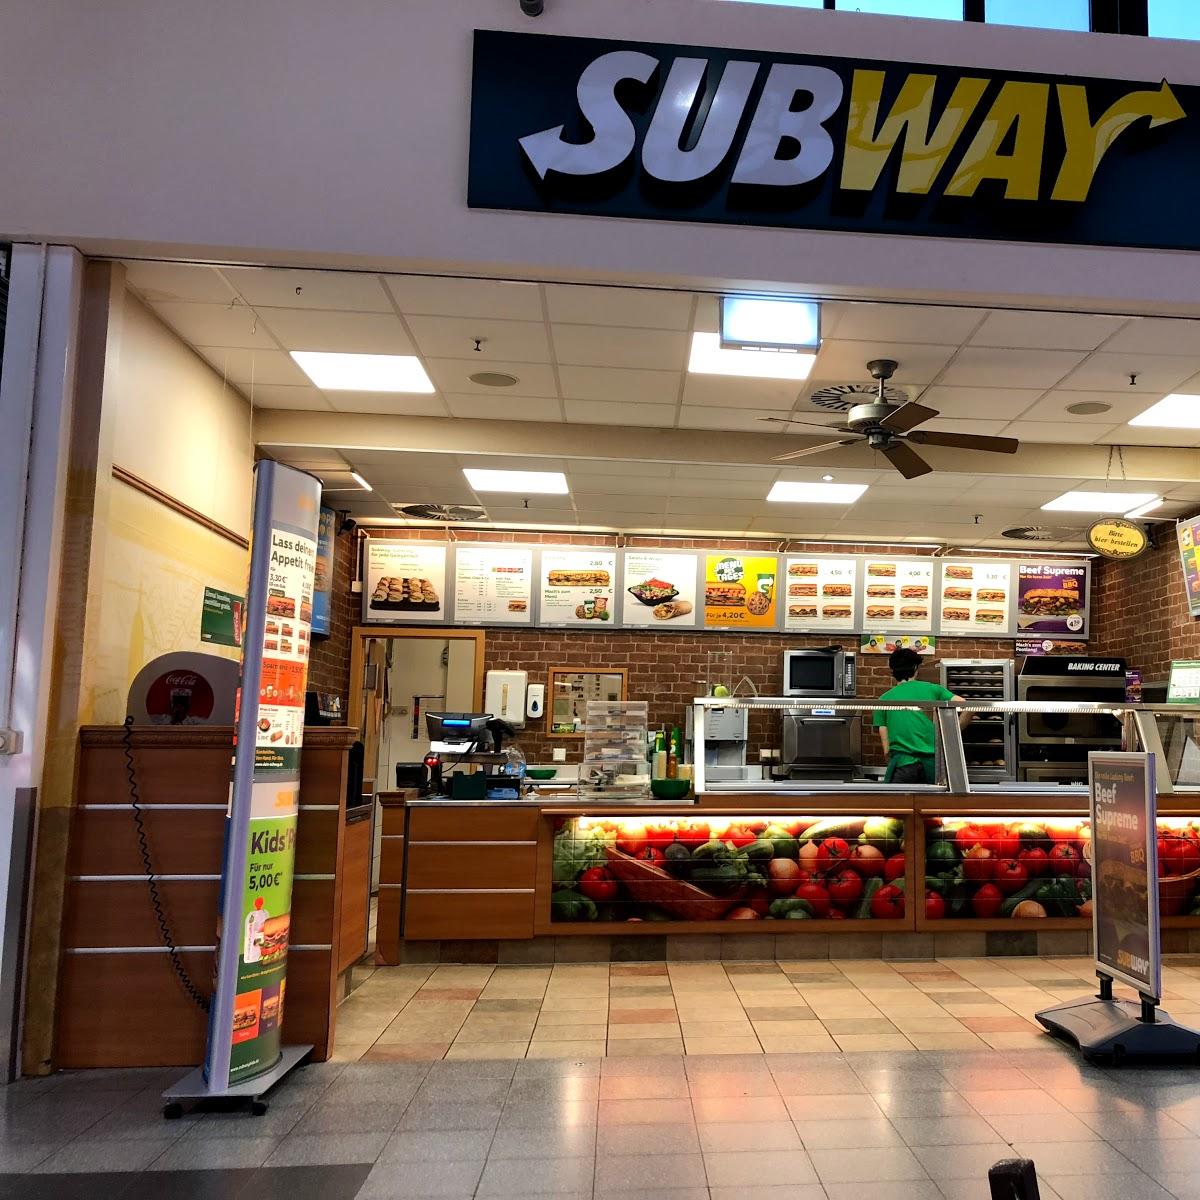 Restaurant "Subway" in Bentwisch